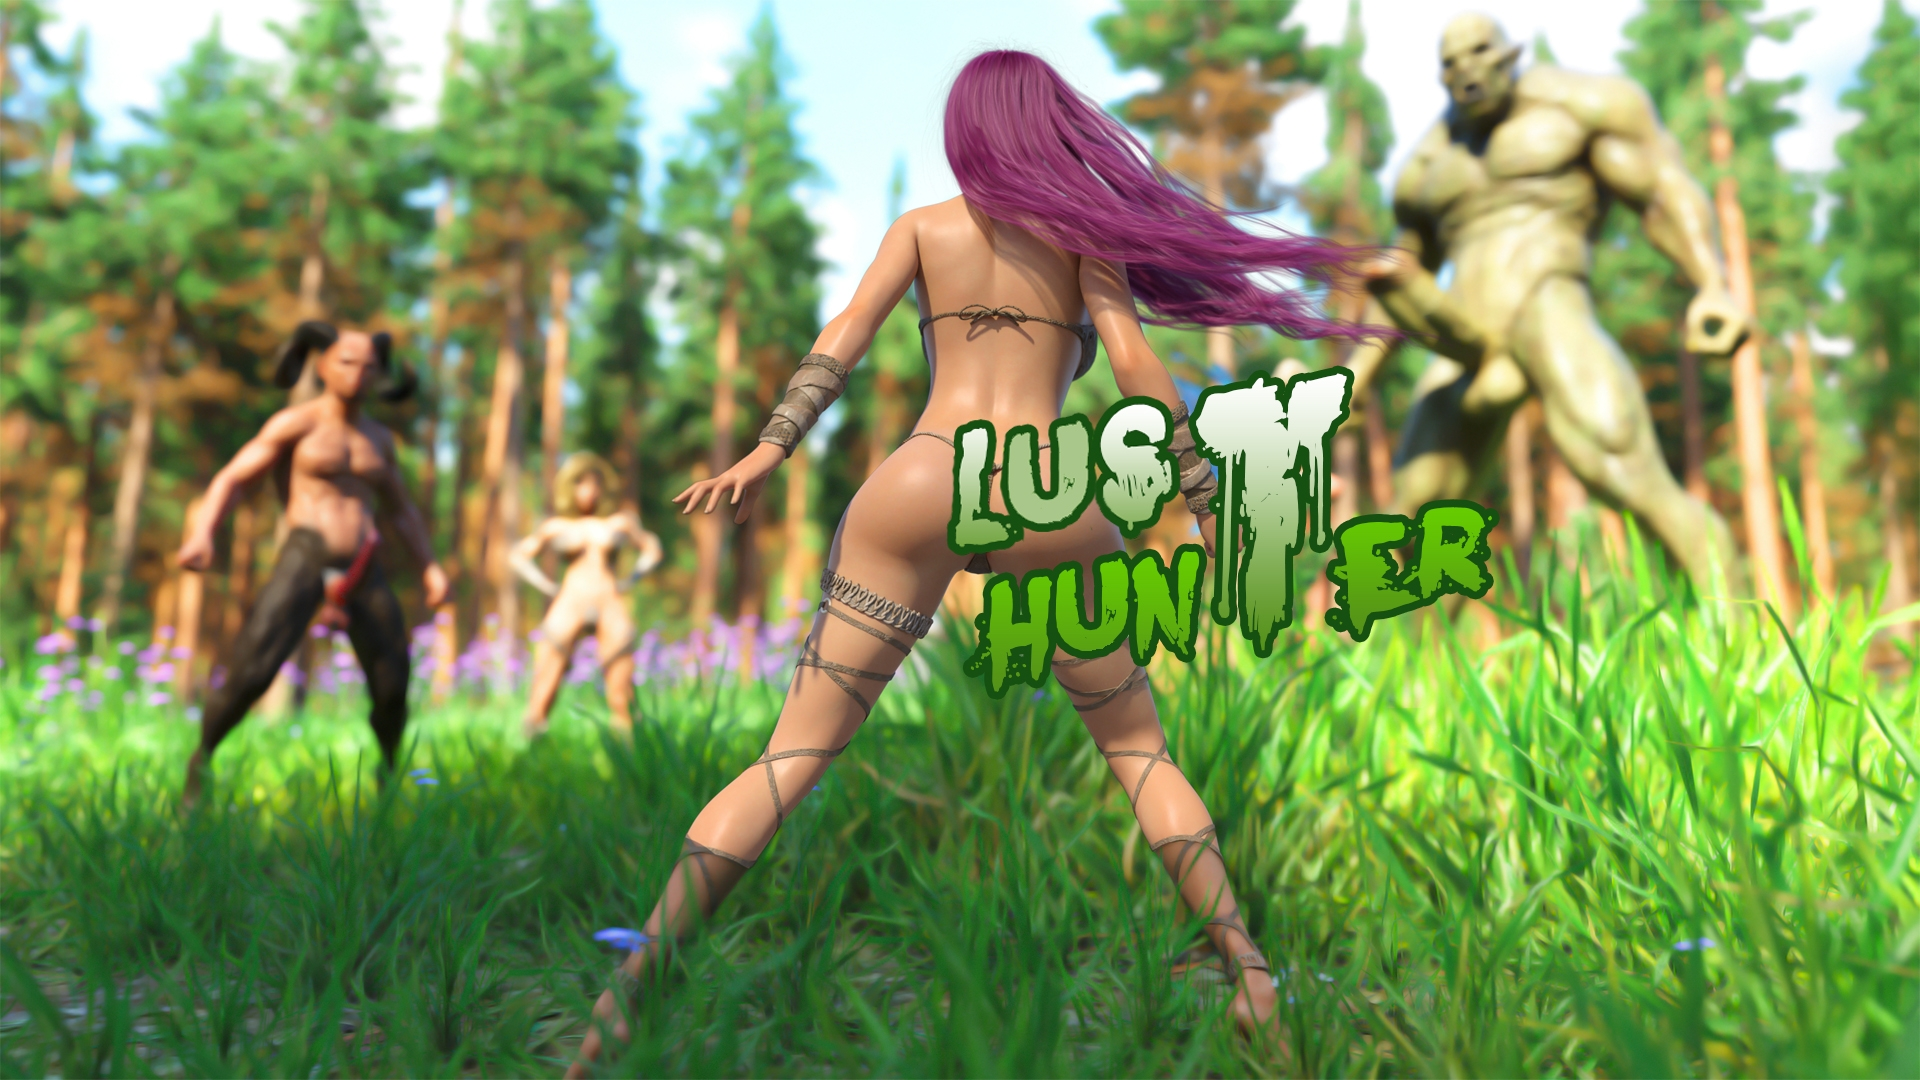 Lust Hunter [v0.1.0] main image